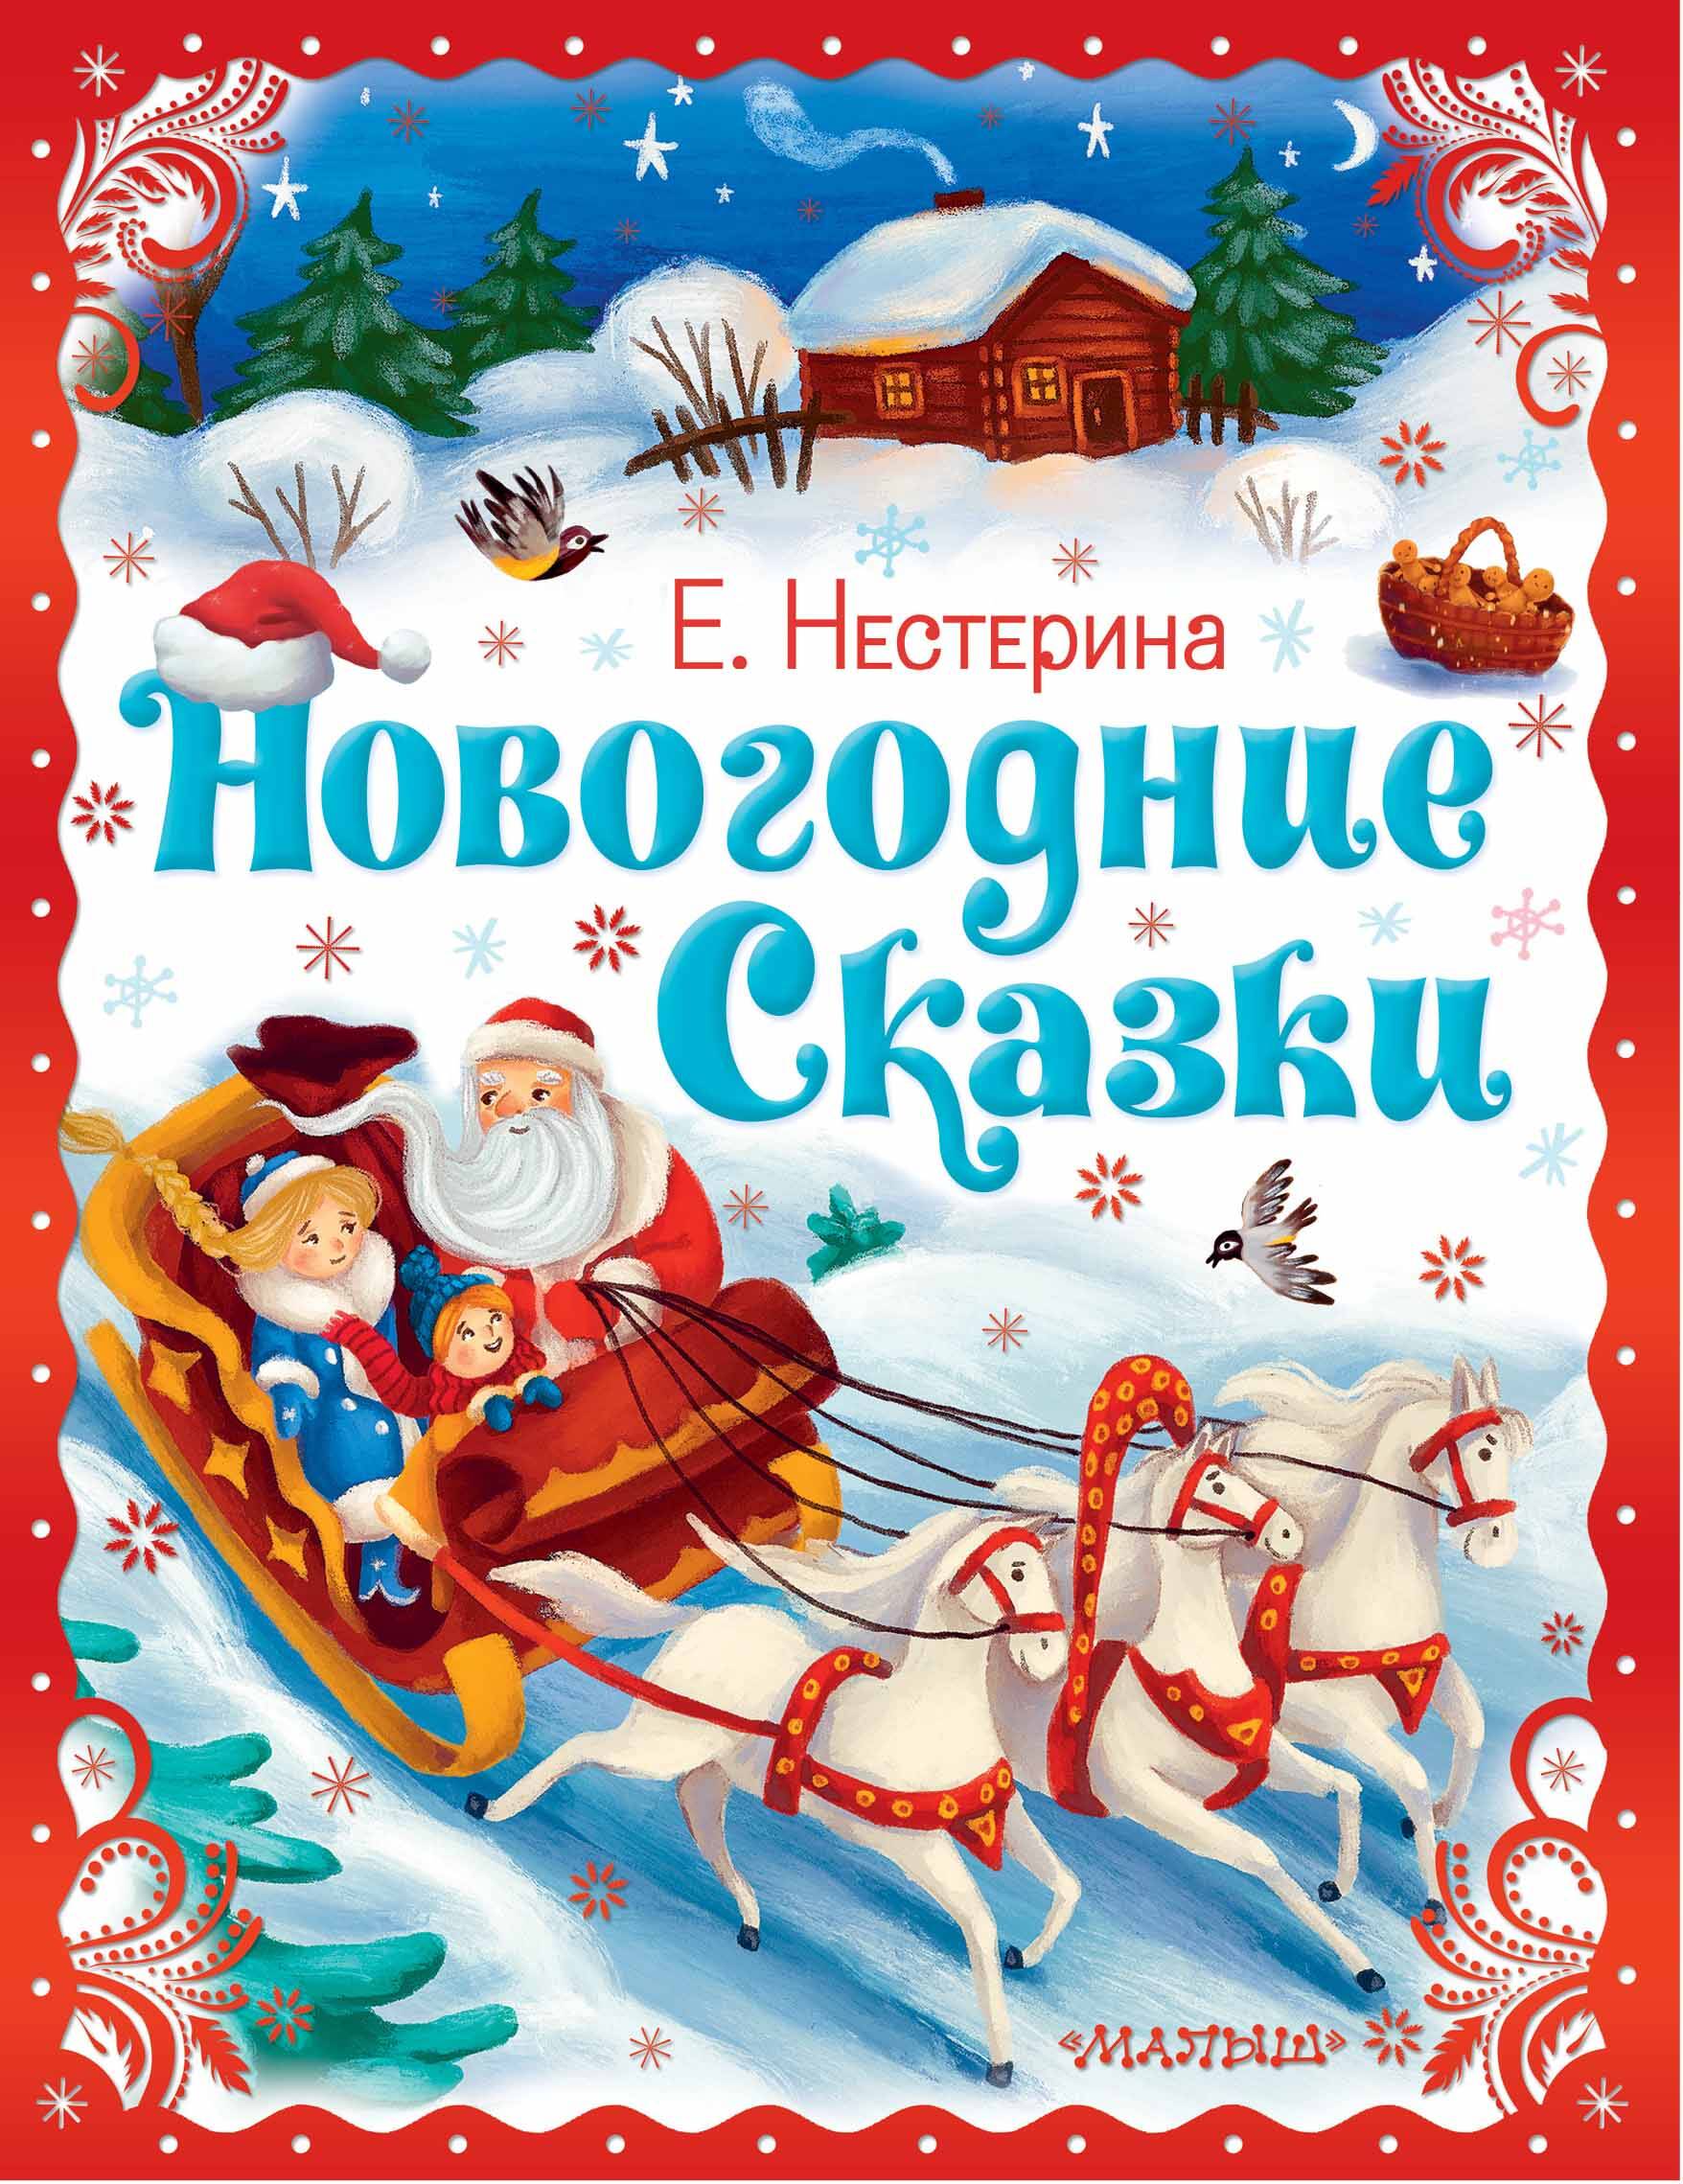 нестерина елена вячеславовна самый первый дед мороз Новогодние сказки